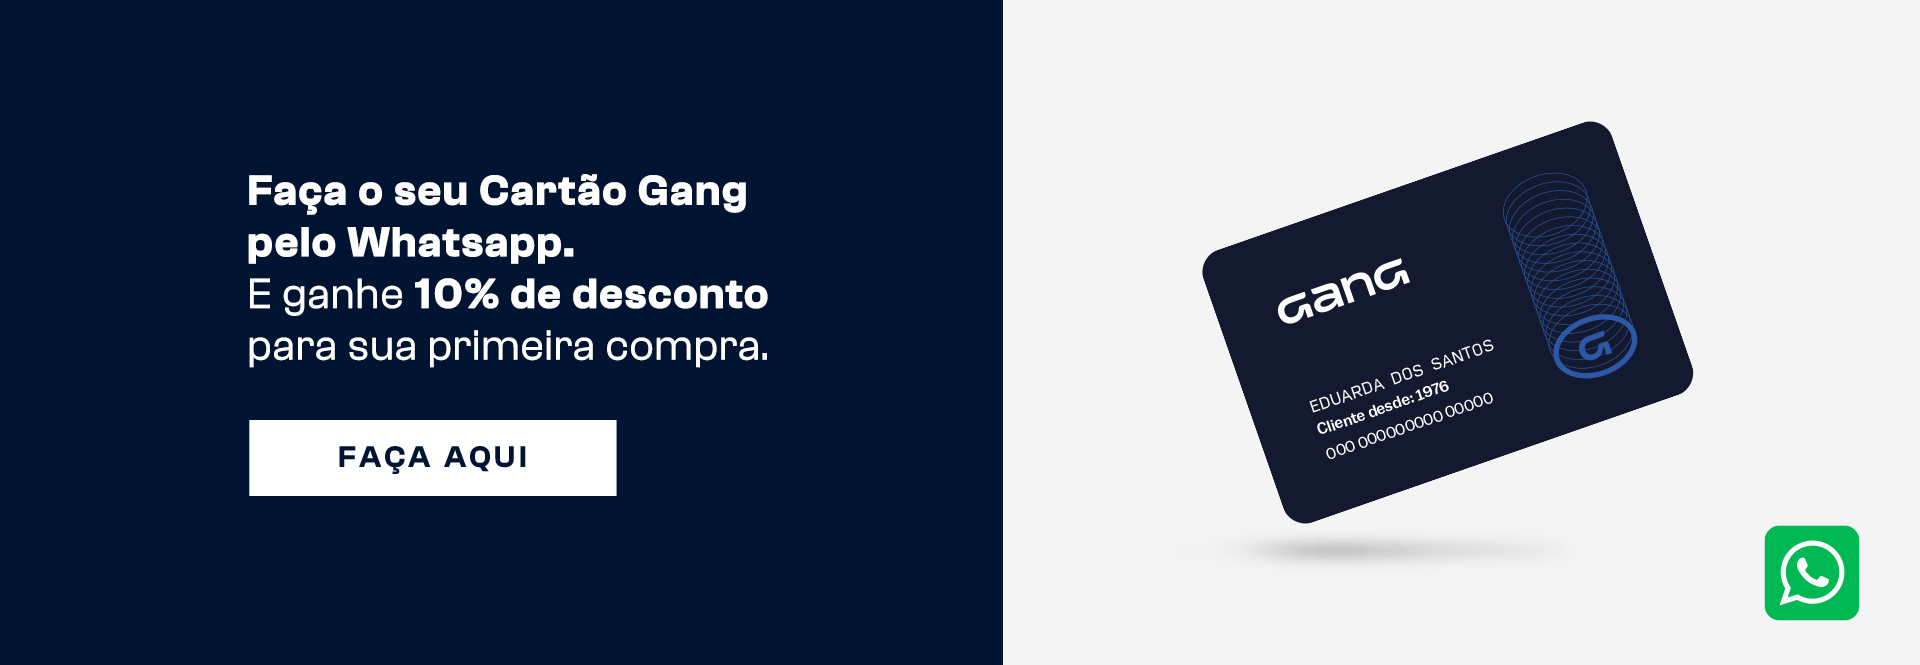 Faça o seu Cartão Gang